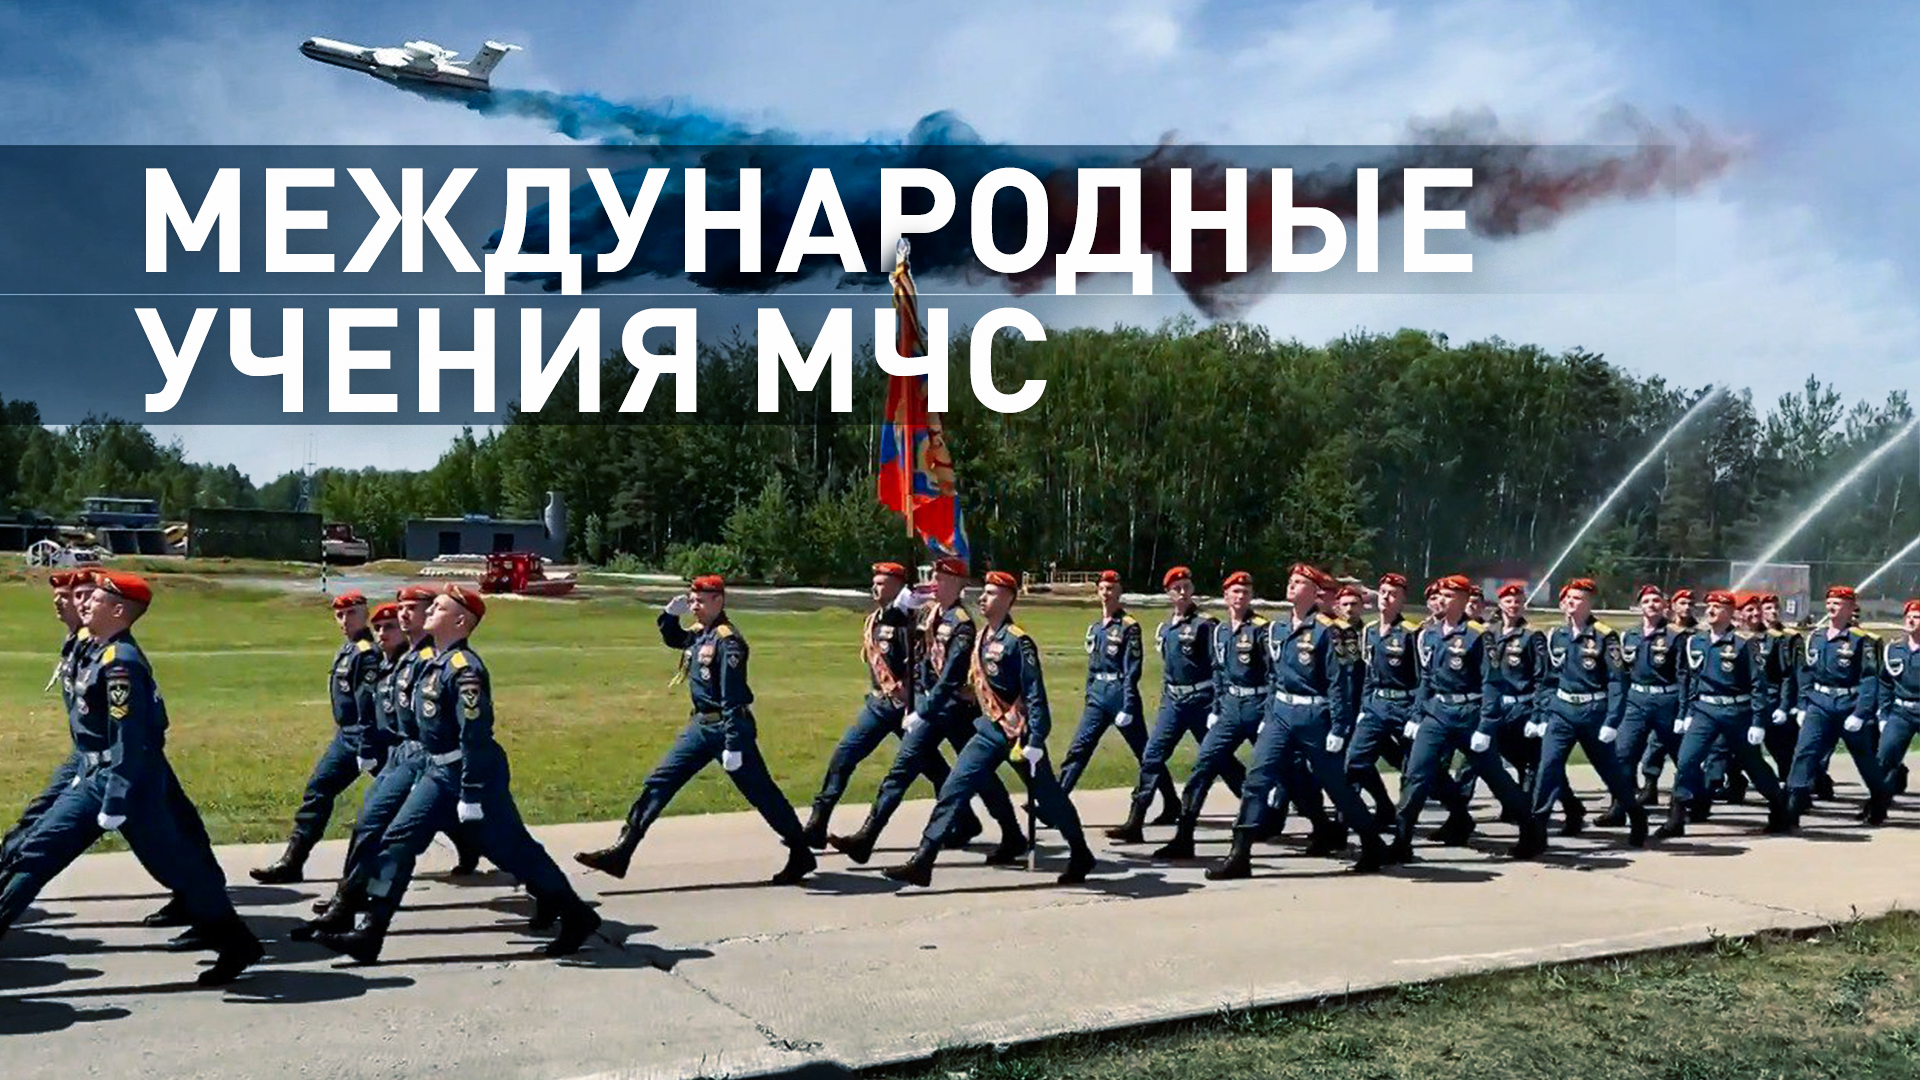 Спасатели из 40 стран приняли в участие в учениях МЧС России — видео